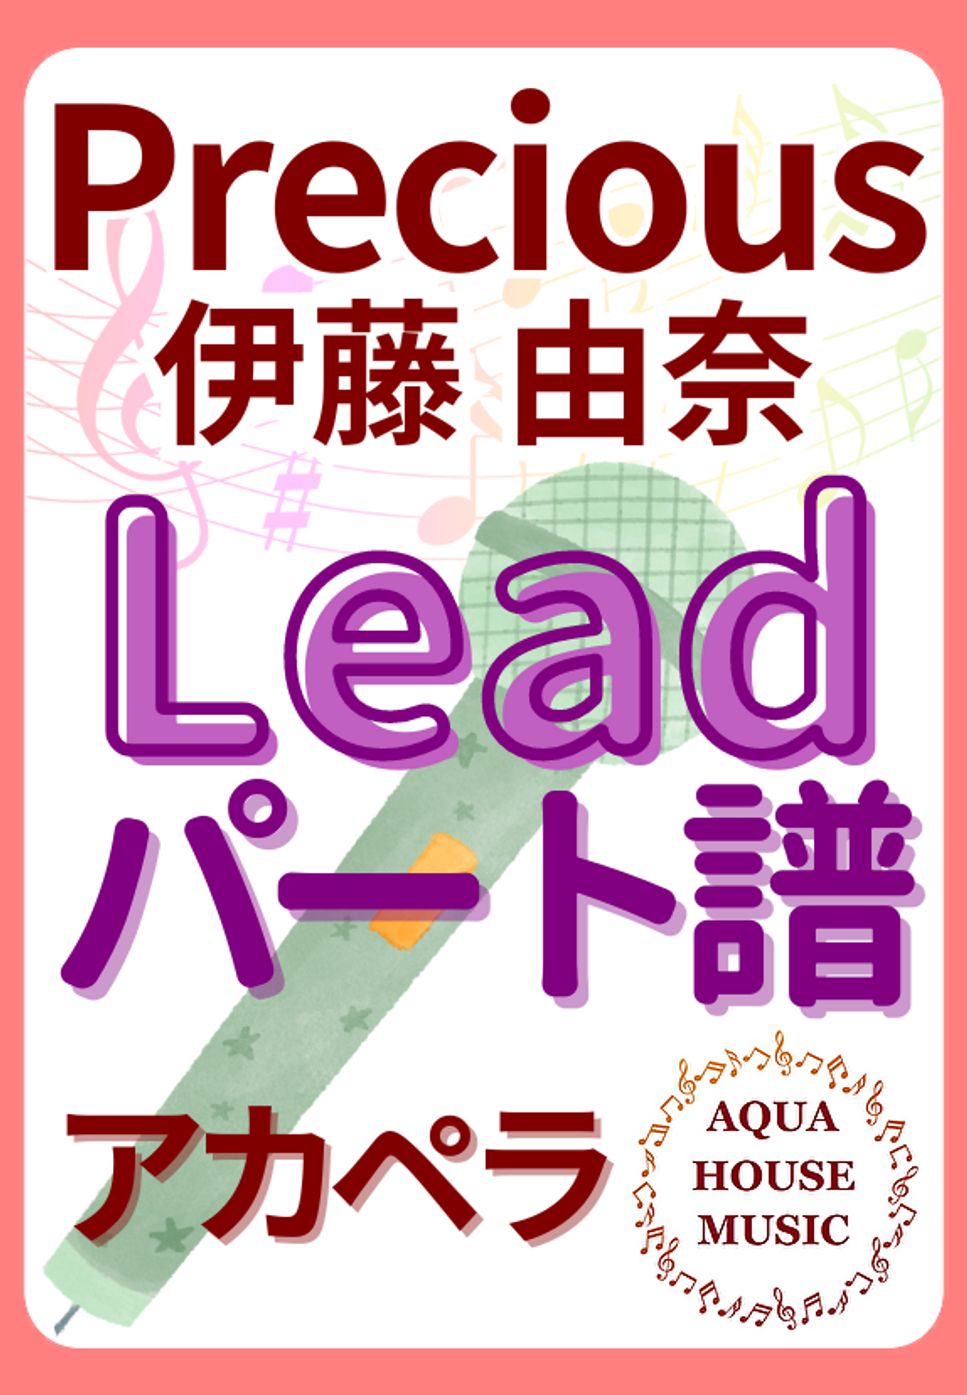 伊藤 由奈 - PRECIOUS (アカペラ楽譜♪Leadパート譜) by 飯田 亜紗子